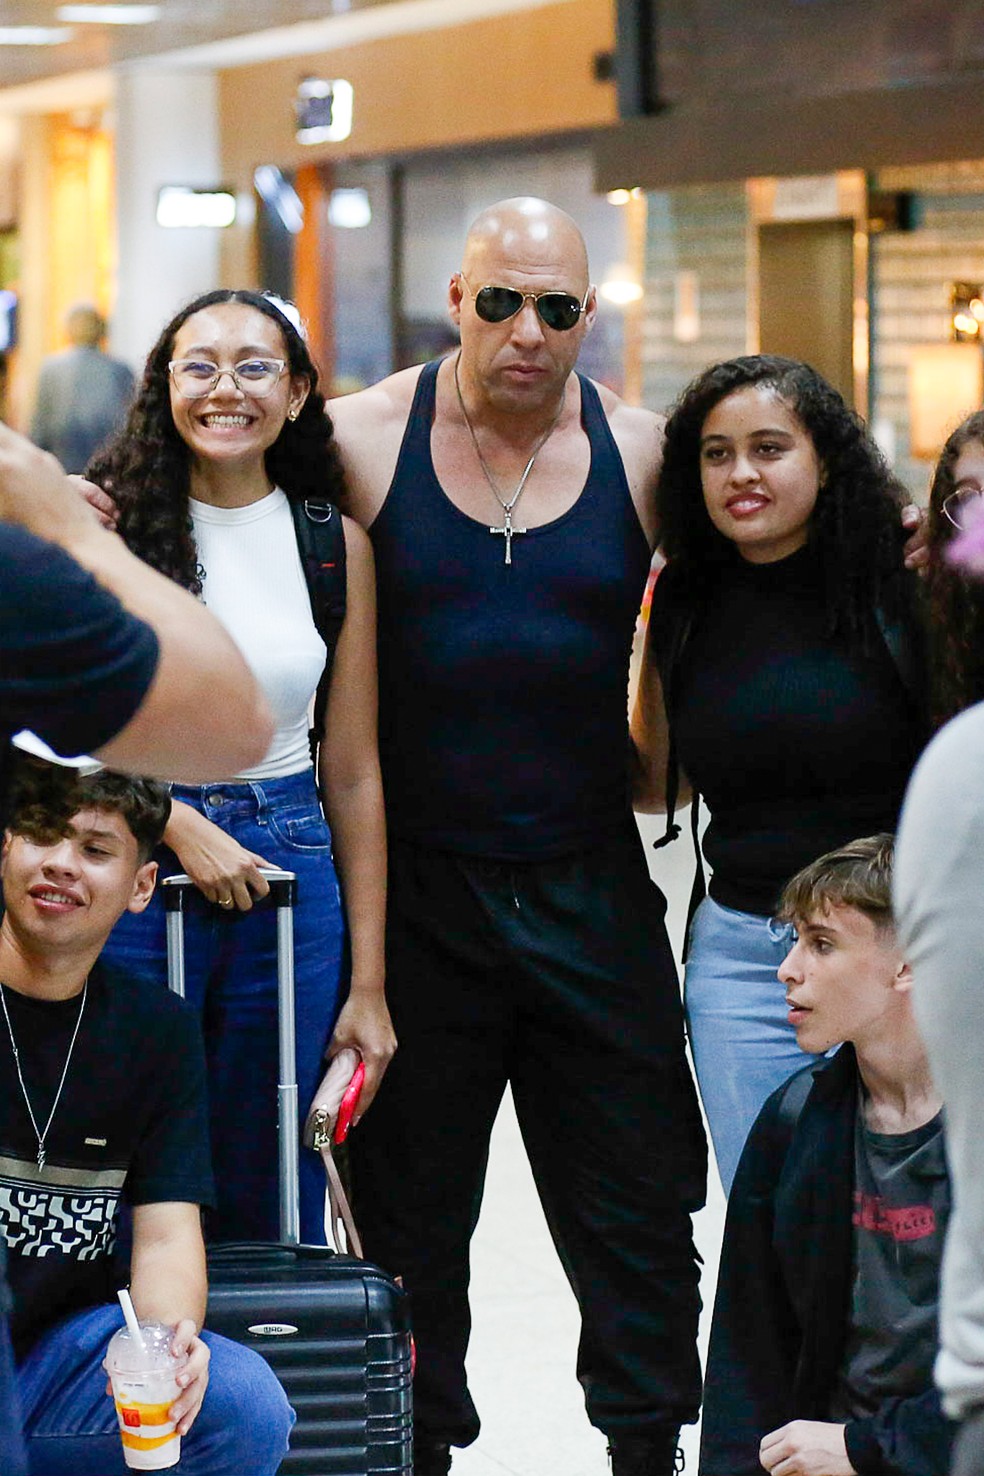 Marcos Salvo, o 'Vin Diesel brasileiro', gera alvoroço em fãs em aeroporto — Foto: Paulo Tauil - Agnews